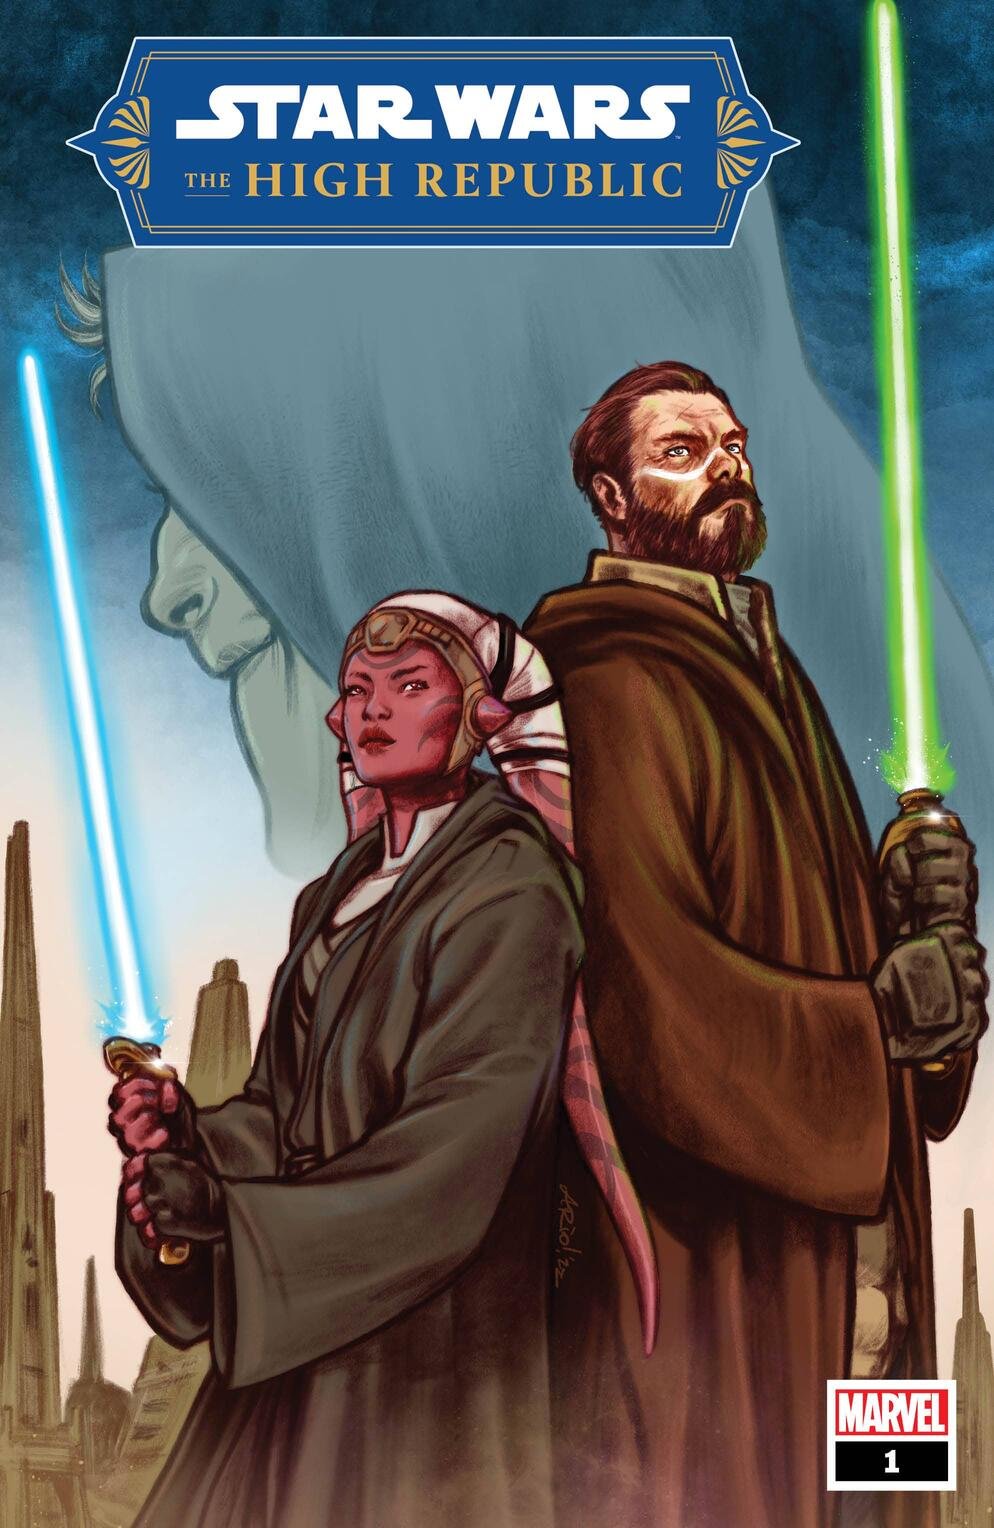 Cover di Star Wars: The High Republic 1 di Ario Anindito, la nuova serie della Fase Due